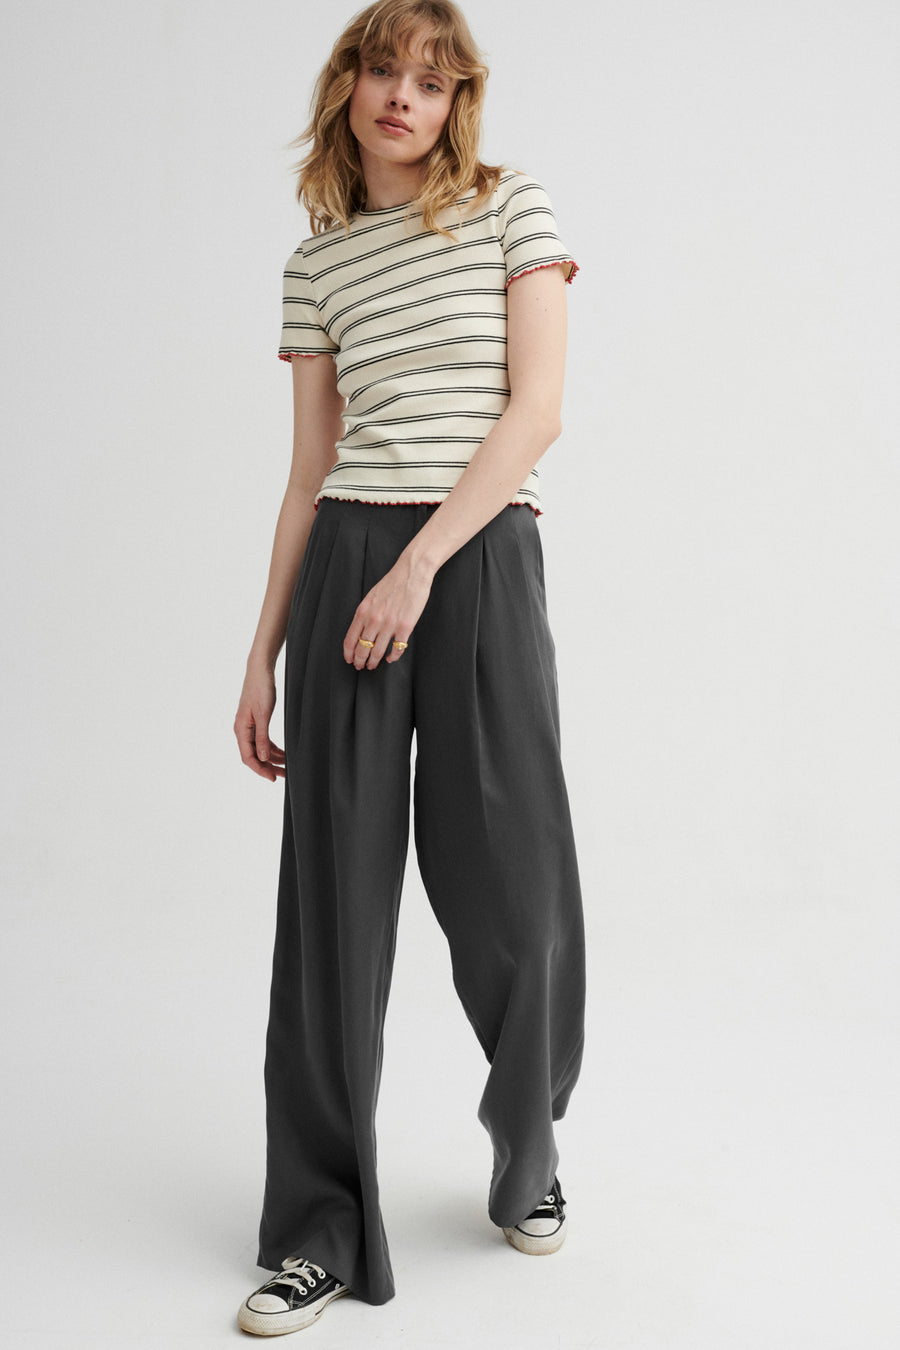 T-shirt z prążkowanej bawełny / 13 / 25 / marina stripes *spodnie-z-tencelu-05-02-cloud-grey* ?Modelka ma 179cm wzrostu i nosi rozmiar XS?